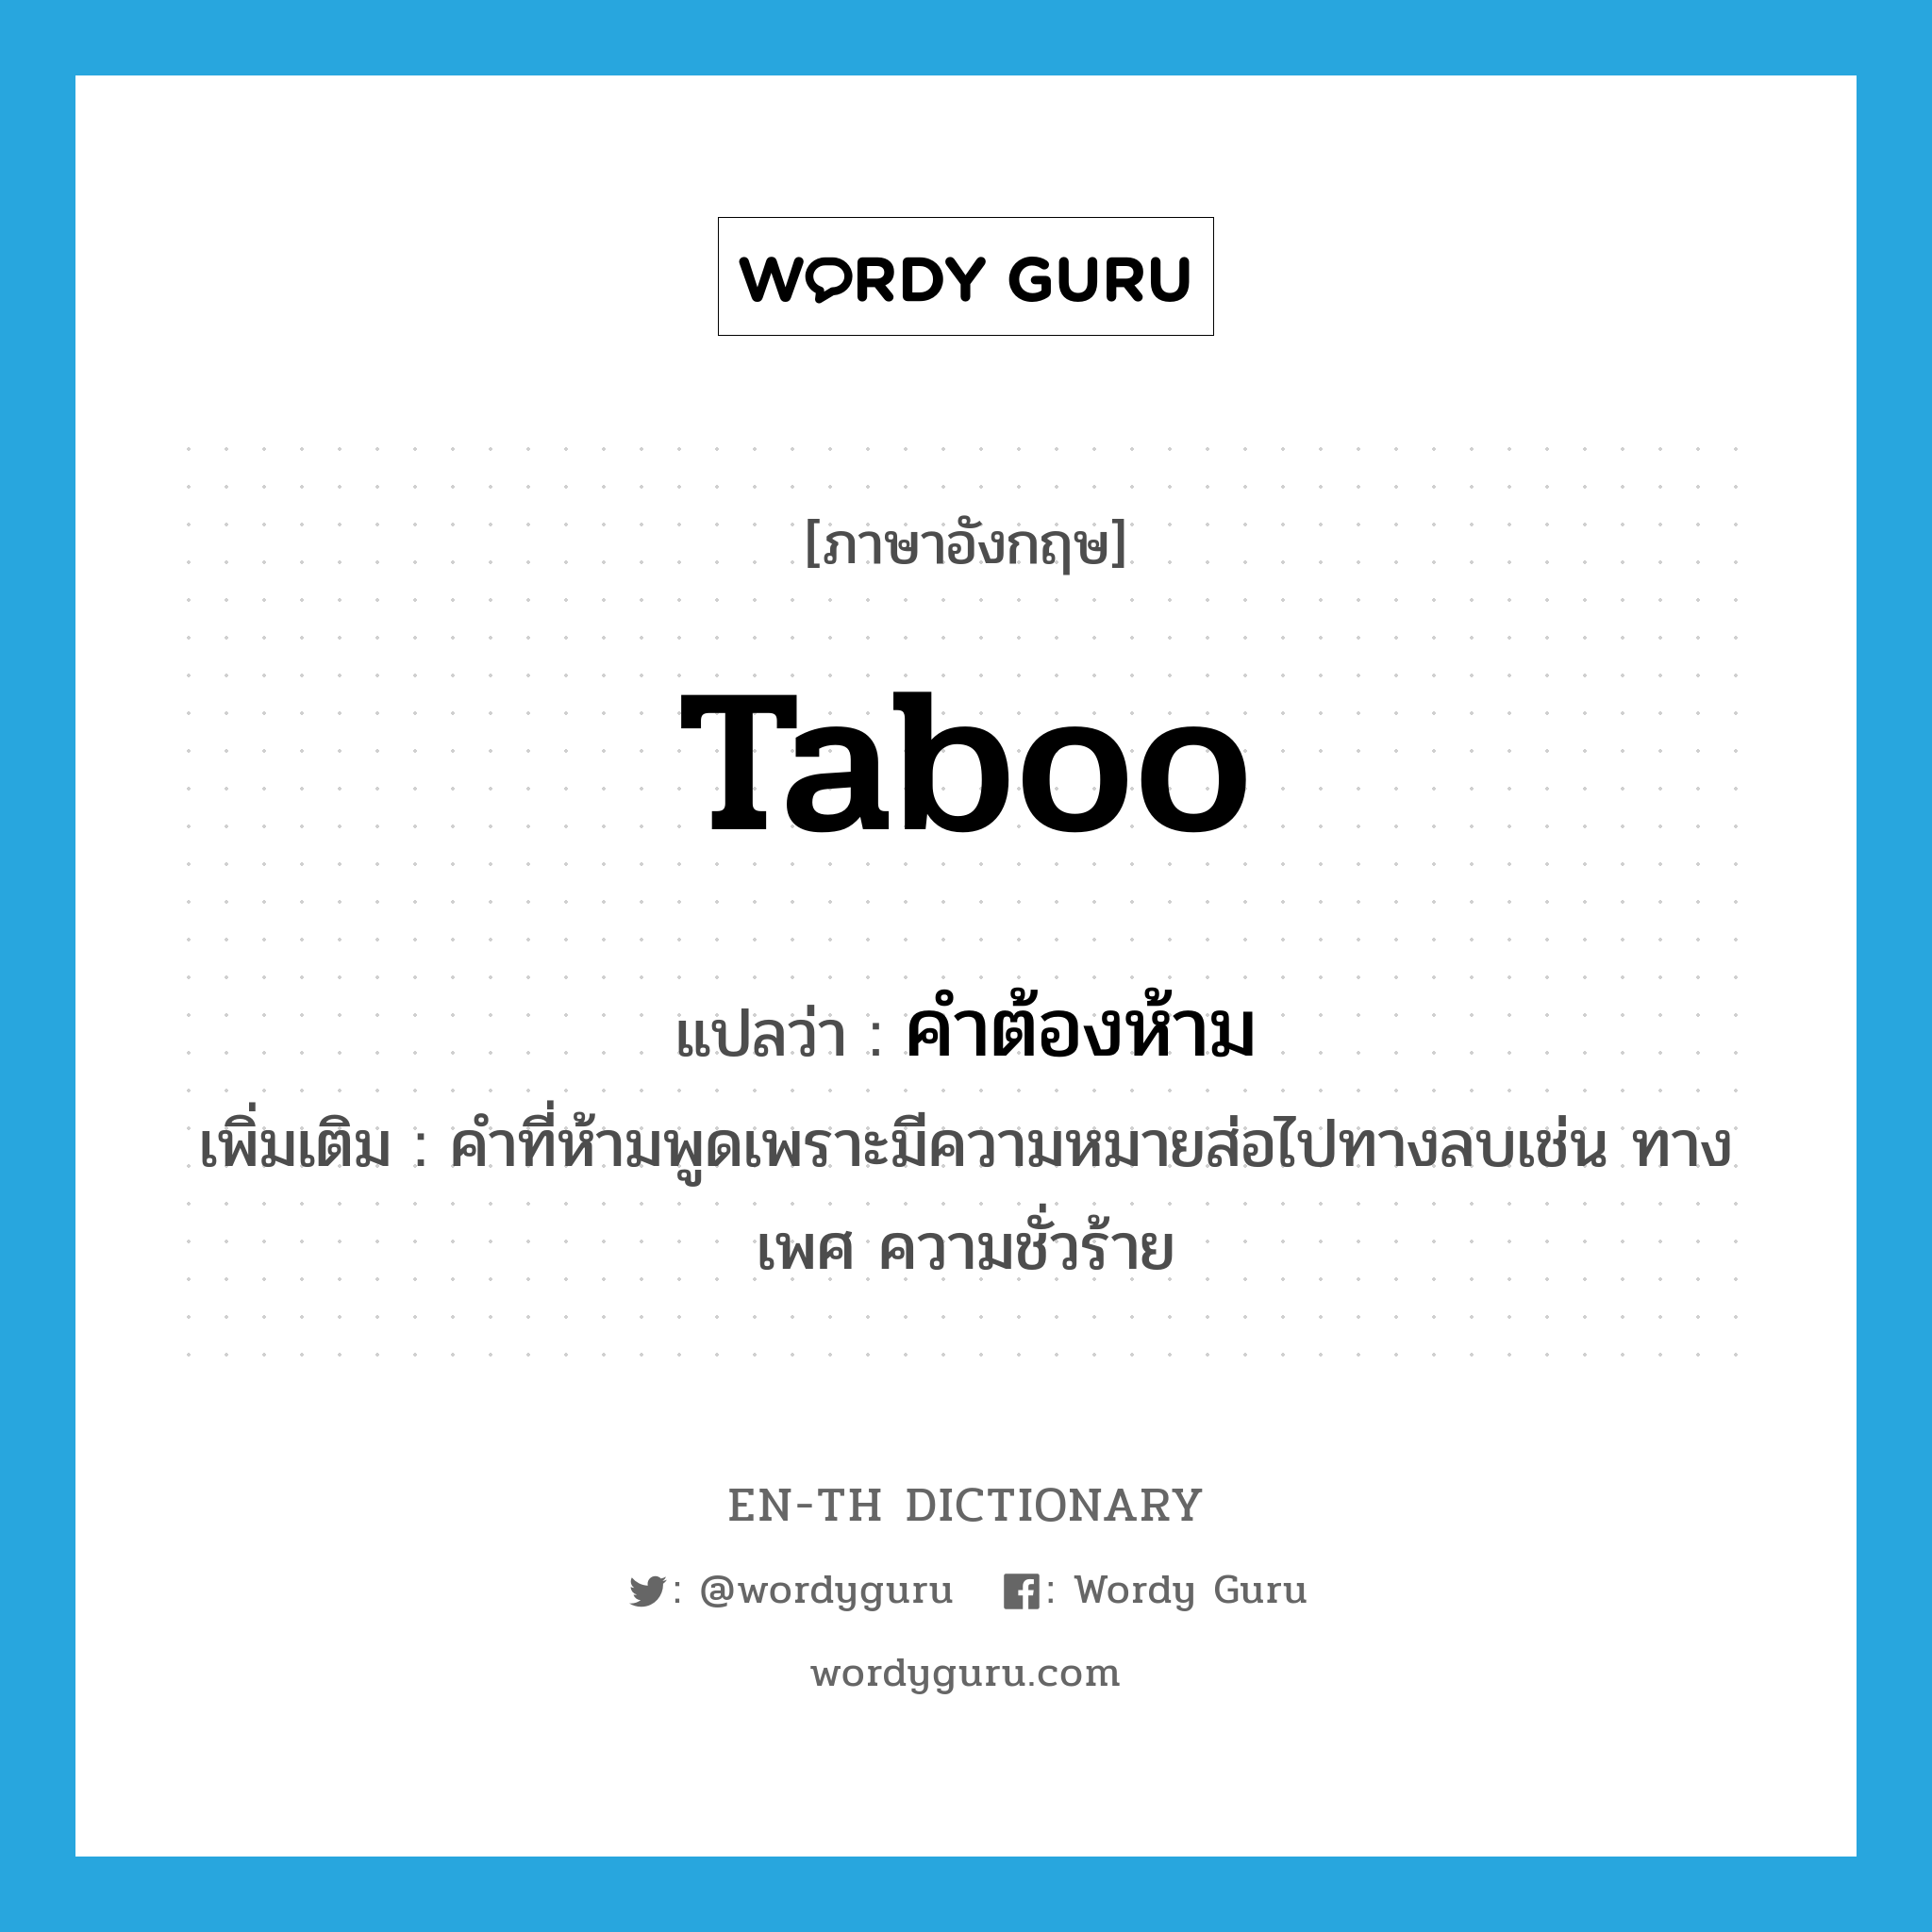 taboo แปลว่า?, คำศัพท์ภาษาอังกฤษ taboo แปลว่า คำต้องห้าม ประเภท N เพิ่มเติม คำที่ห้ามพูดเพราะมีความหมายส่อไปทางลบเช่น ทางเพศ ความชั่วร้าย หมวด N